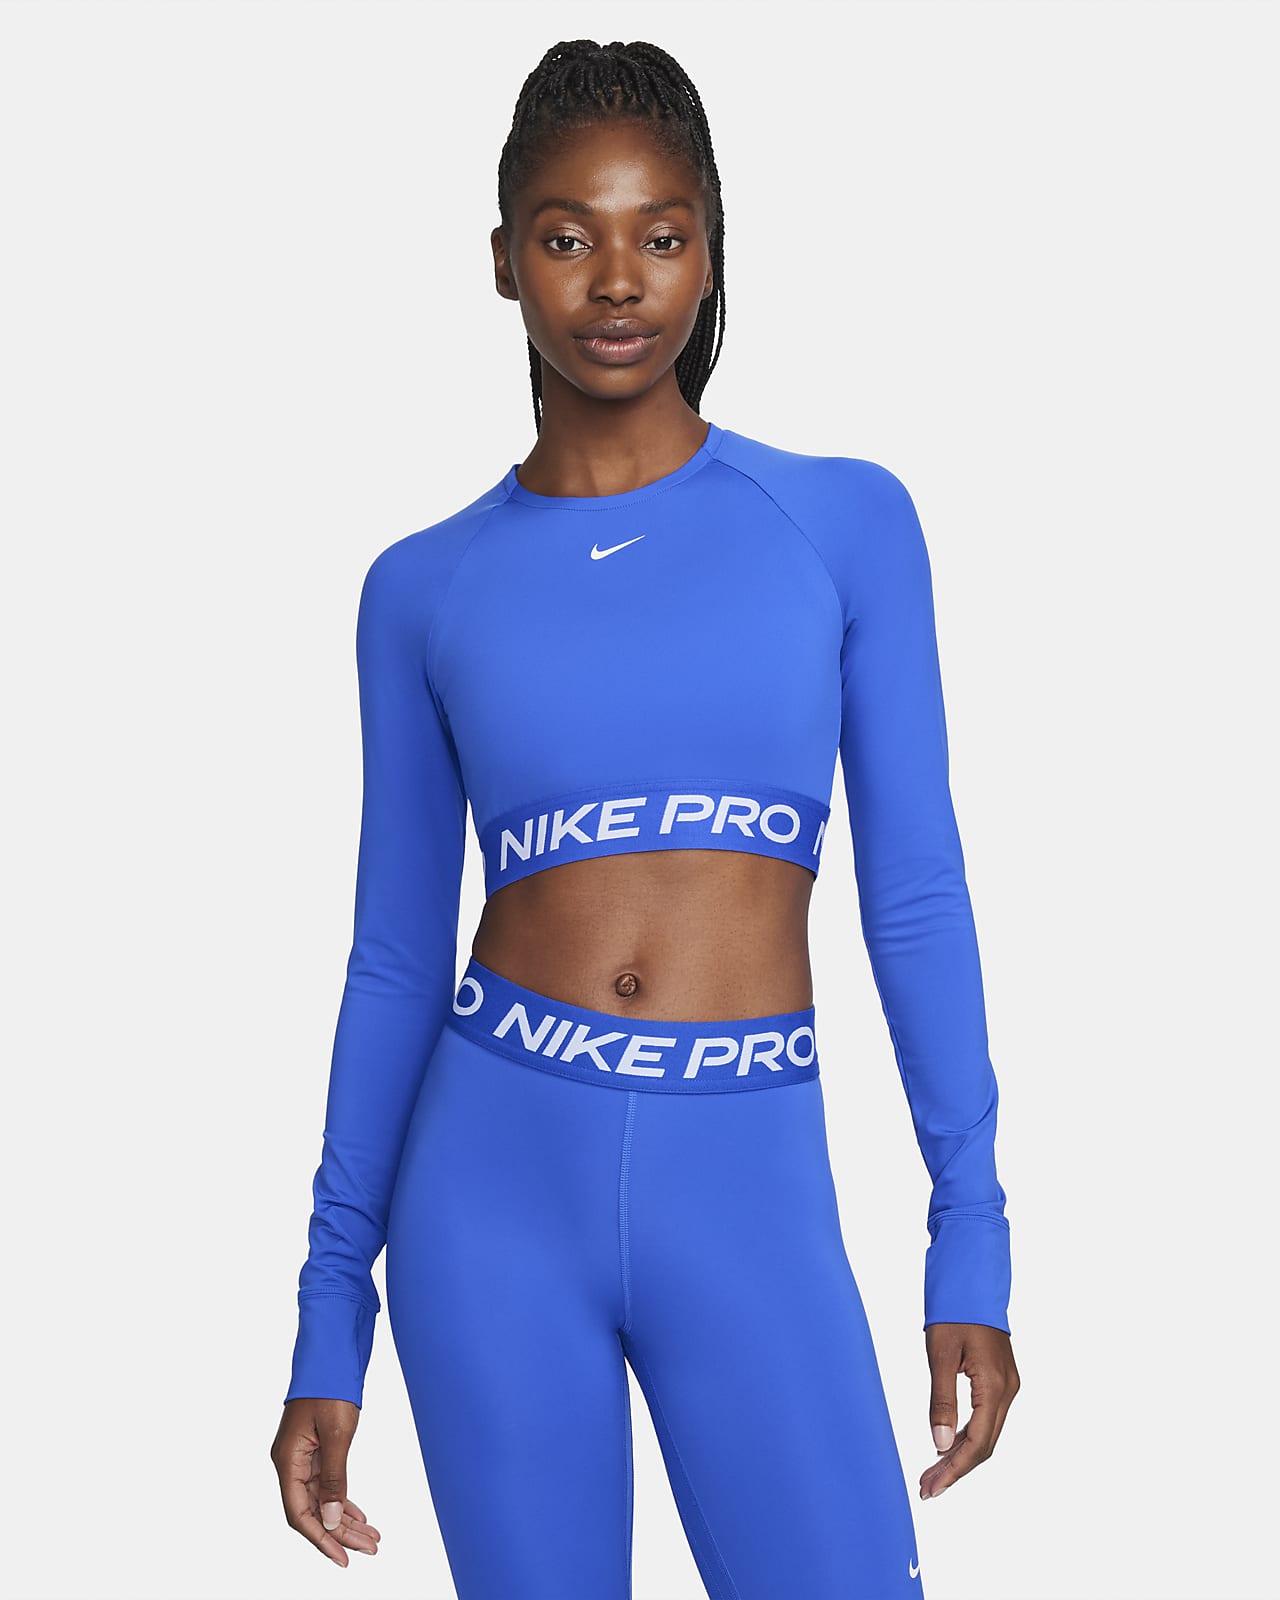 Nike Pro Dri-FIT rövid szabású, hosszú ujjú női felső